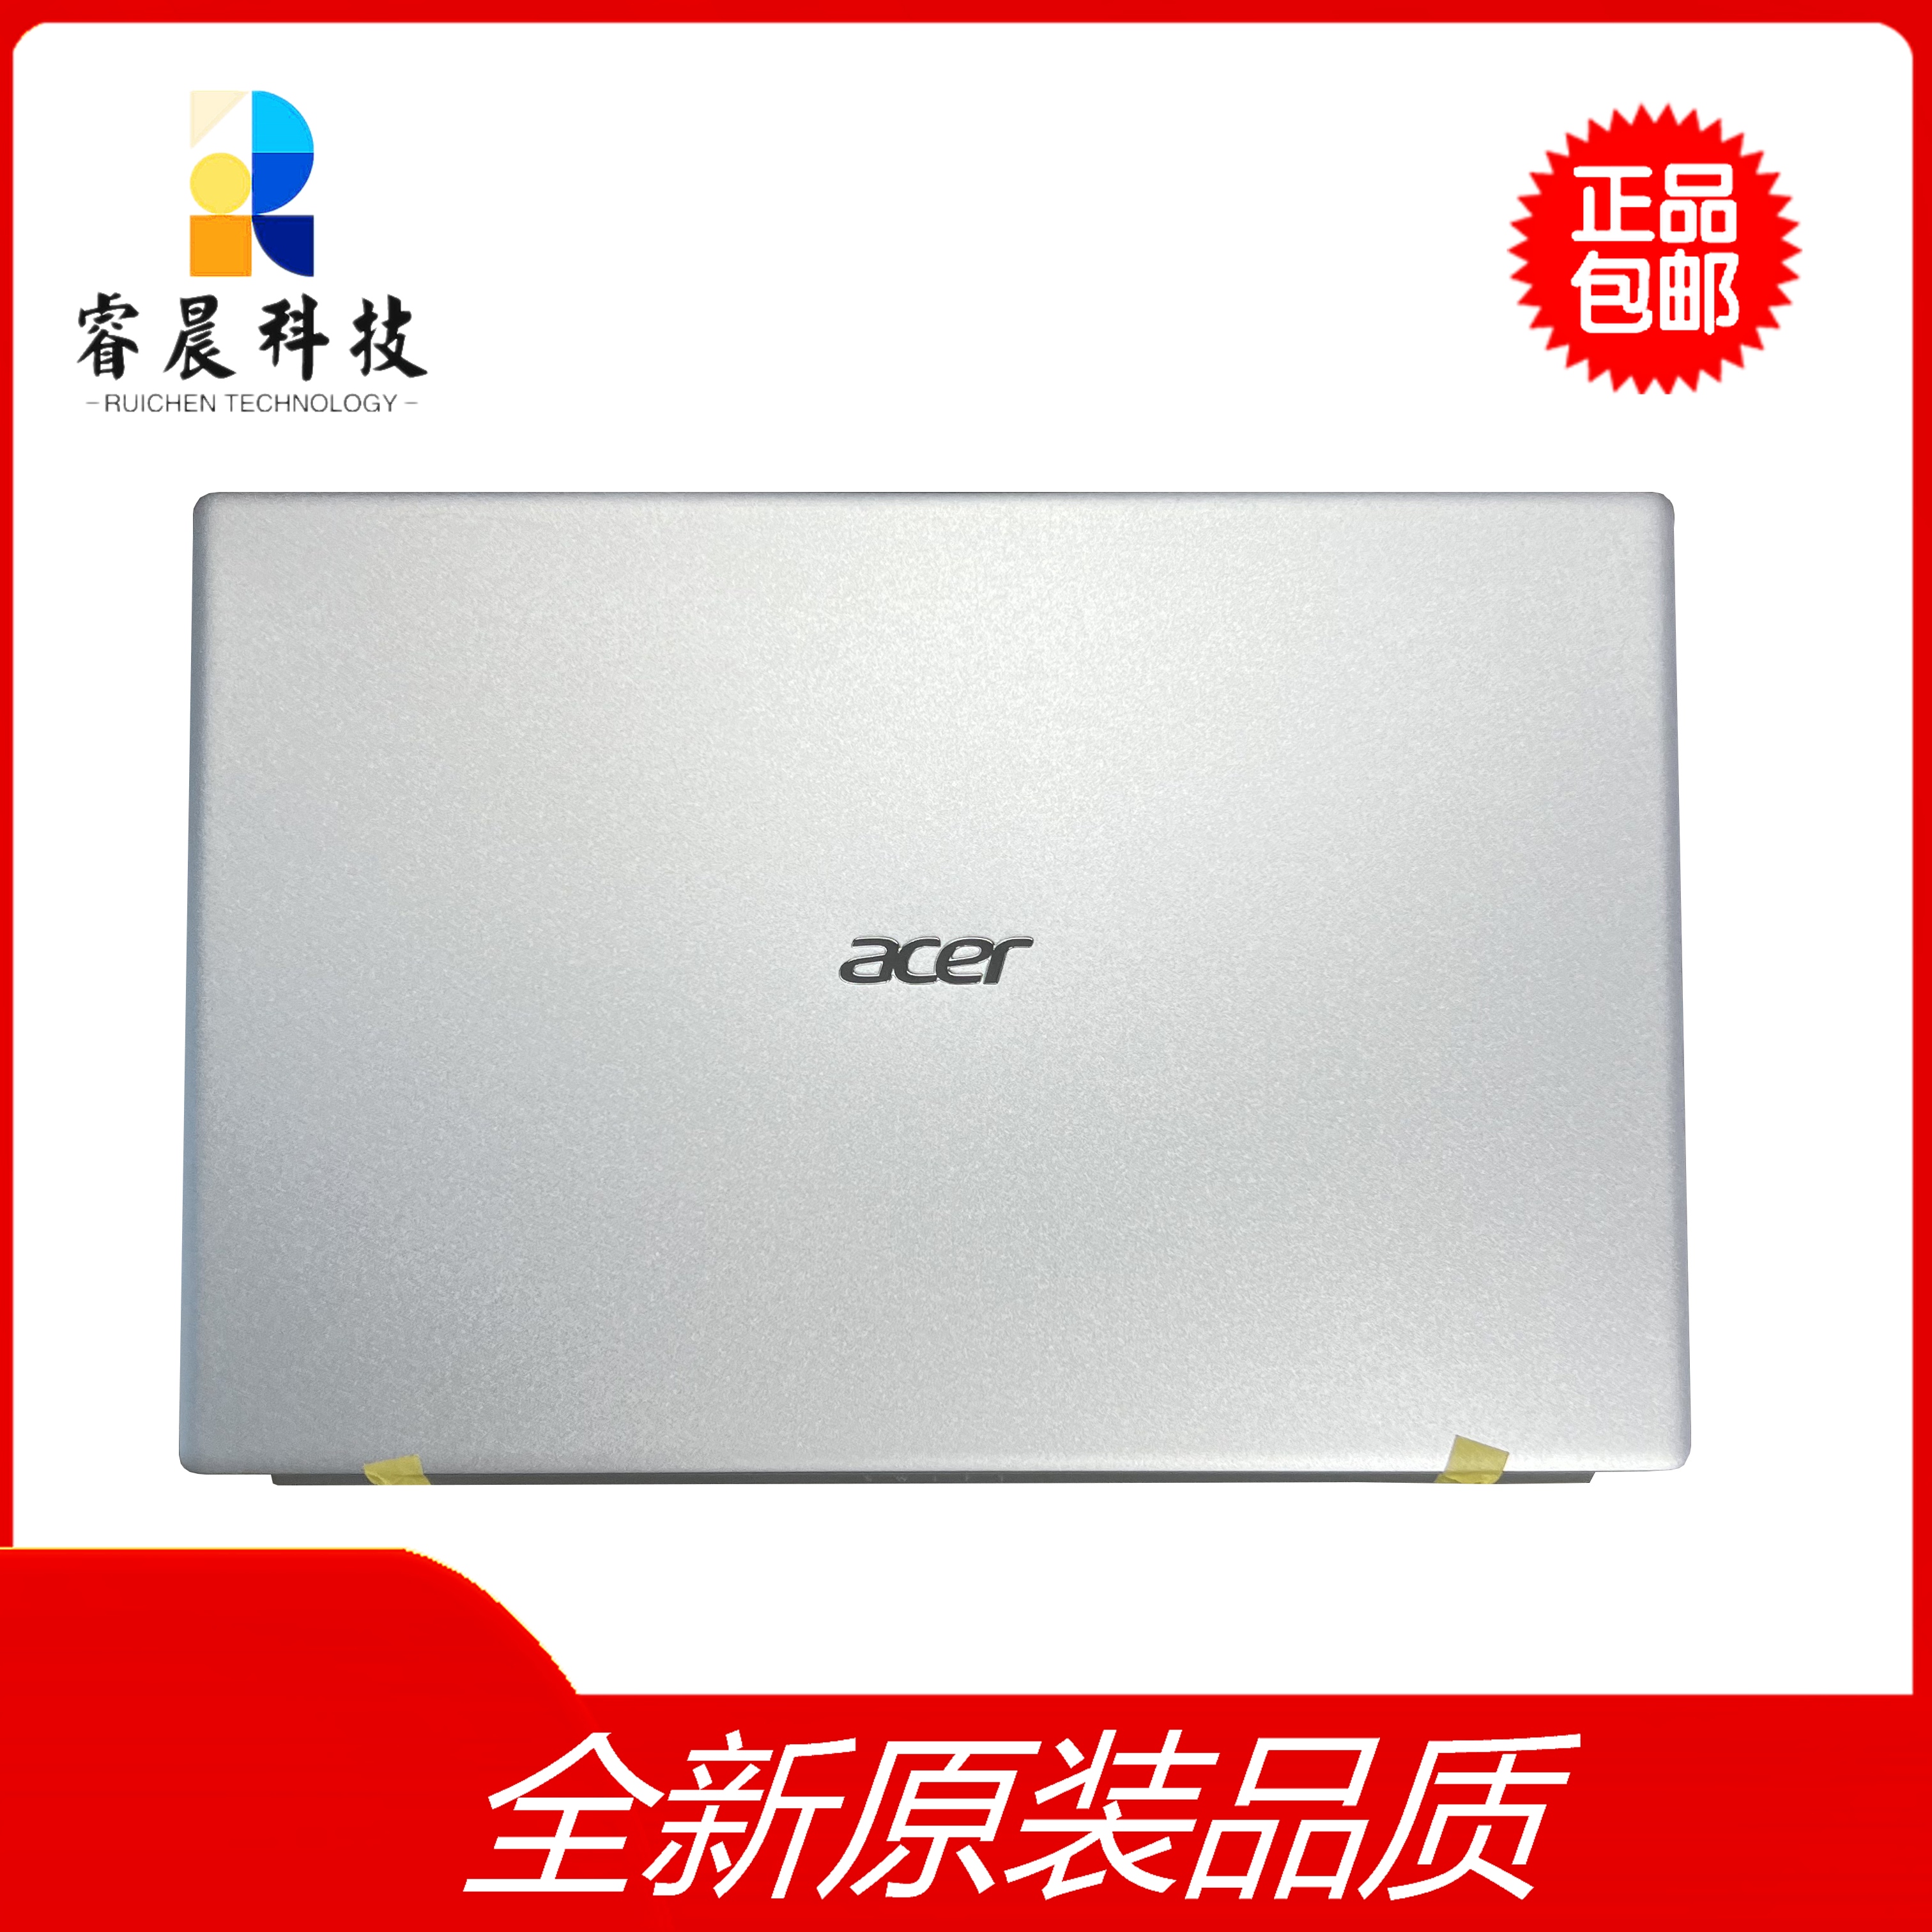 Acer/宏碁 SF314-511 SFX14-41G S3-511 N20C12 A壳 全新 外壳 3C数码配件 笔记本零部件 原图主图